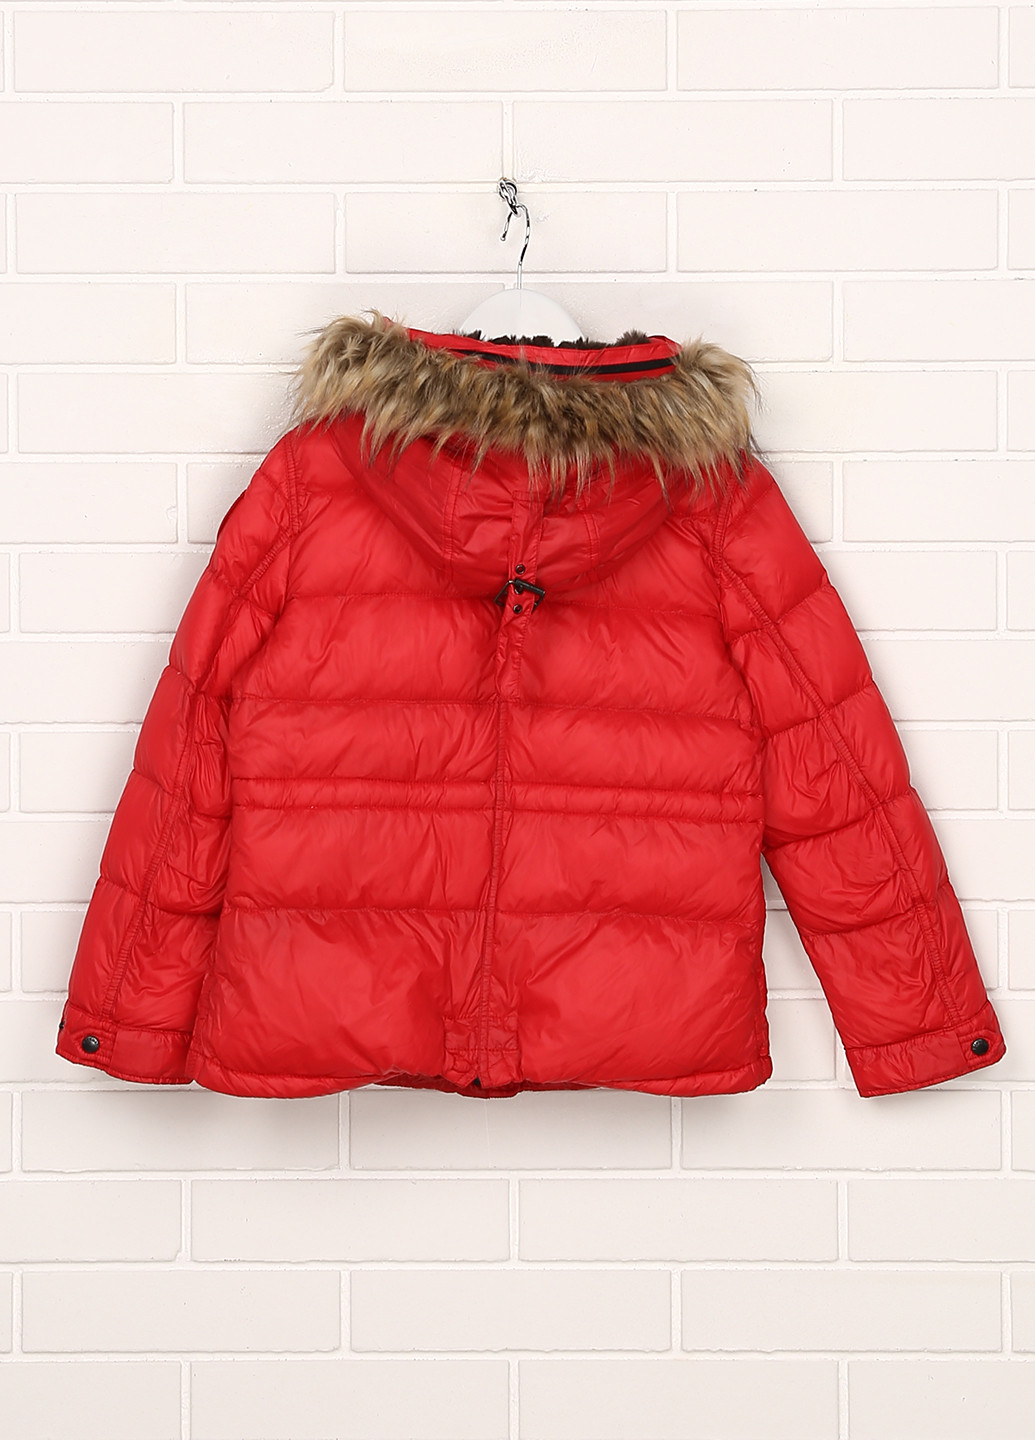 Червона зимня куртка Blauer